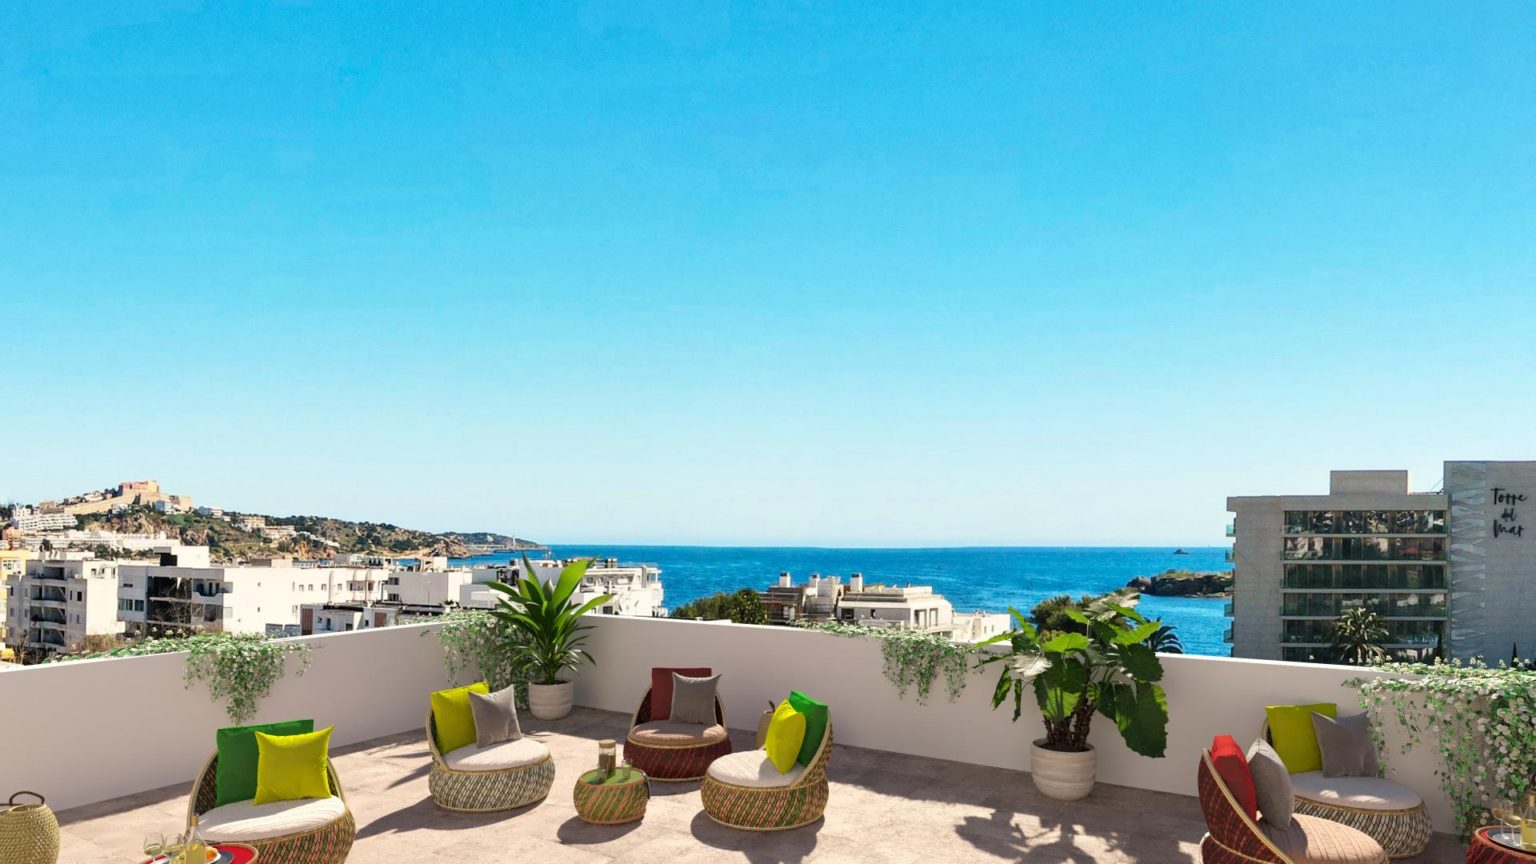 Appartement de style de vie près de la plage à Ibiza Town, avec gestion locative gratuite pour les investisseurs